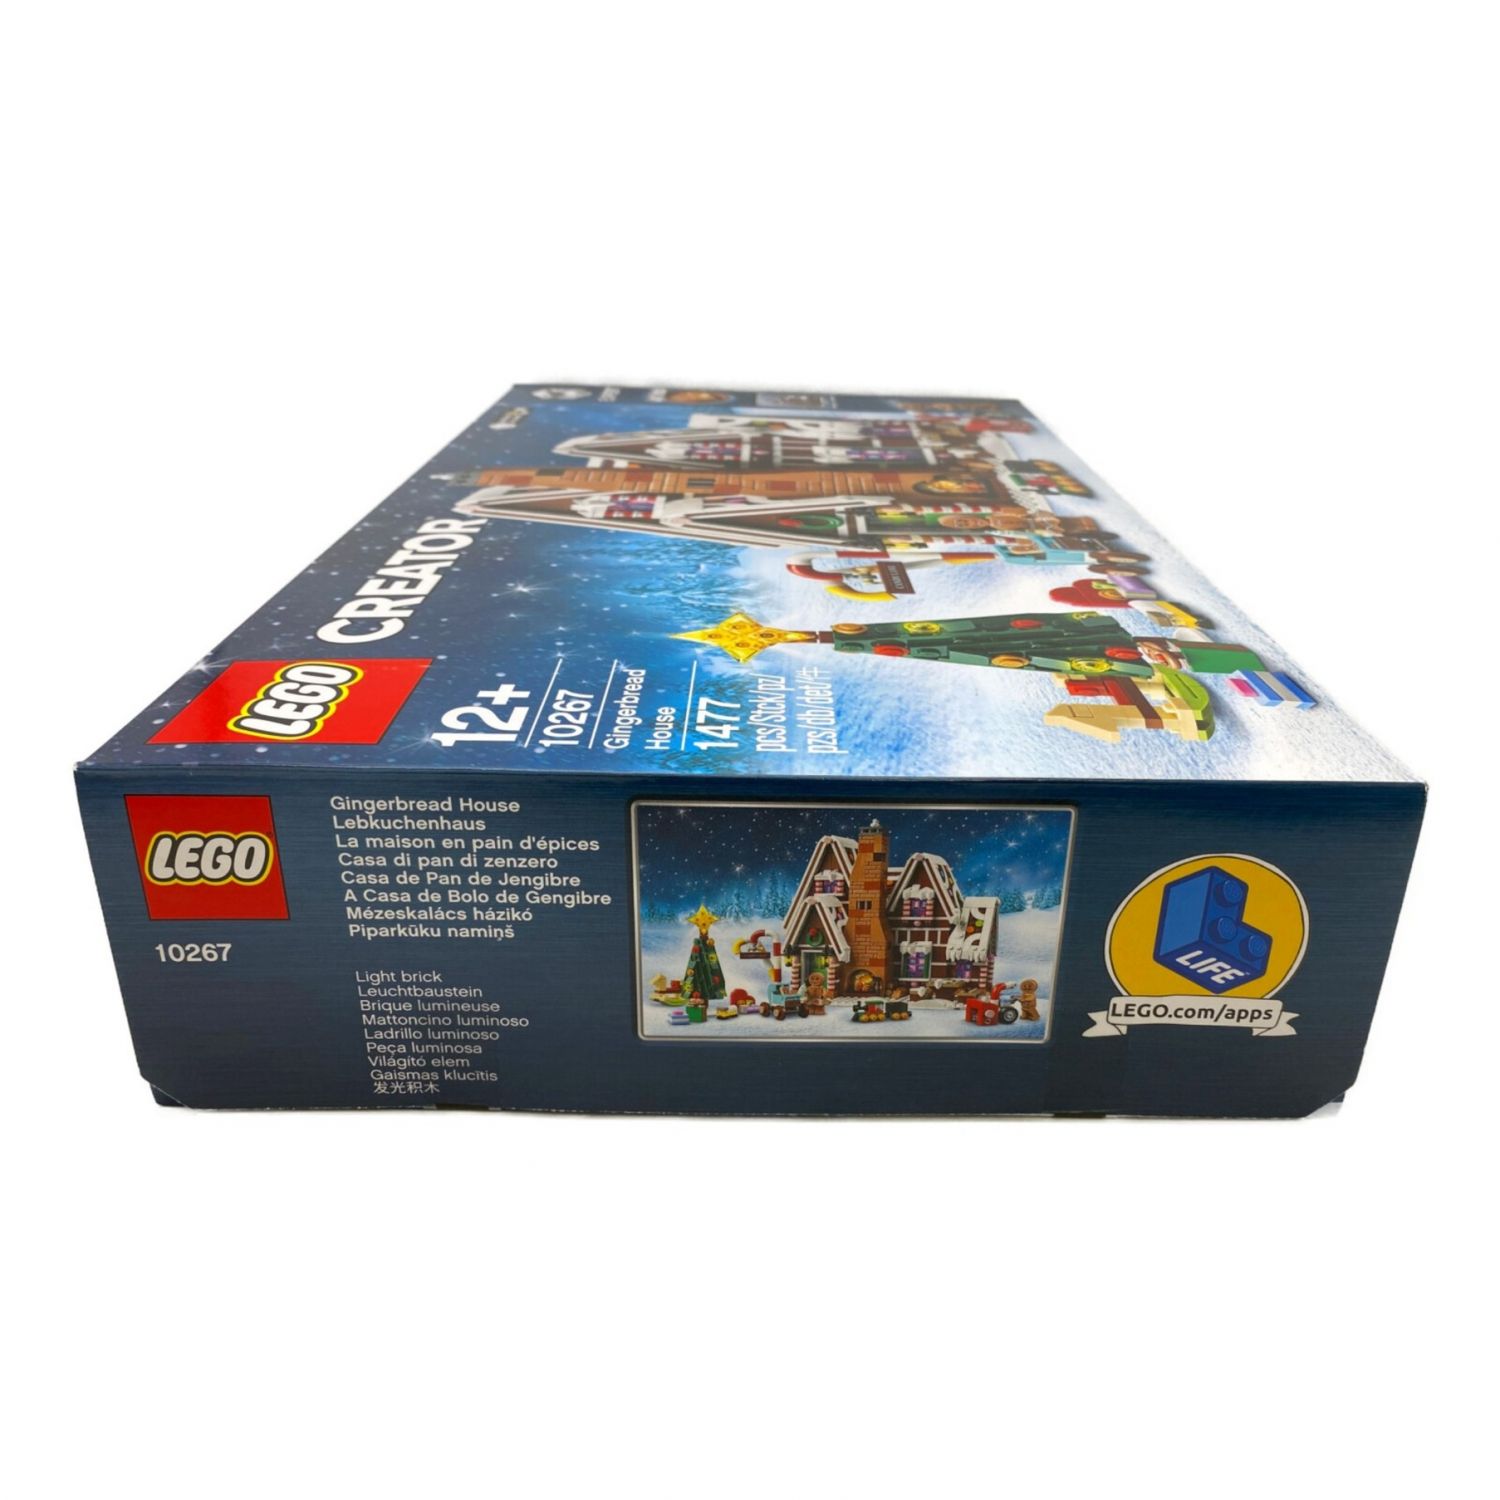 LEGO レゴ ブロック クリエイターエキスパートモデル ジンジャー